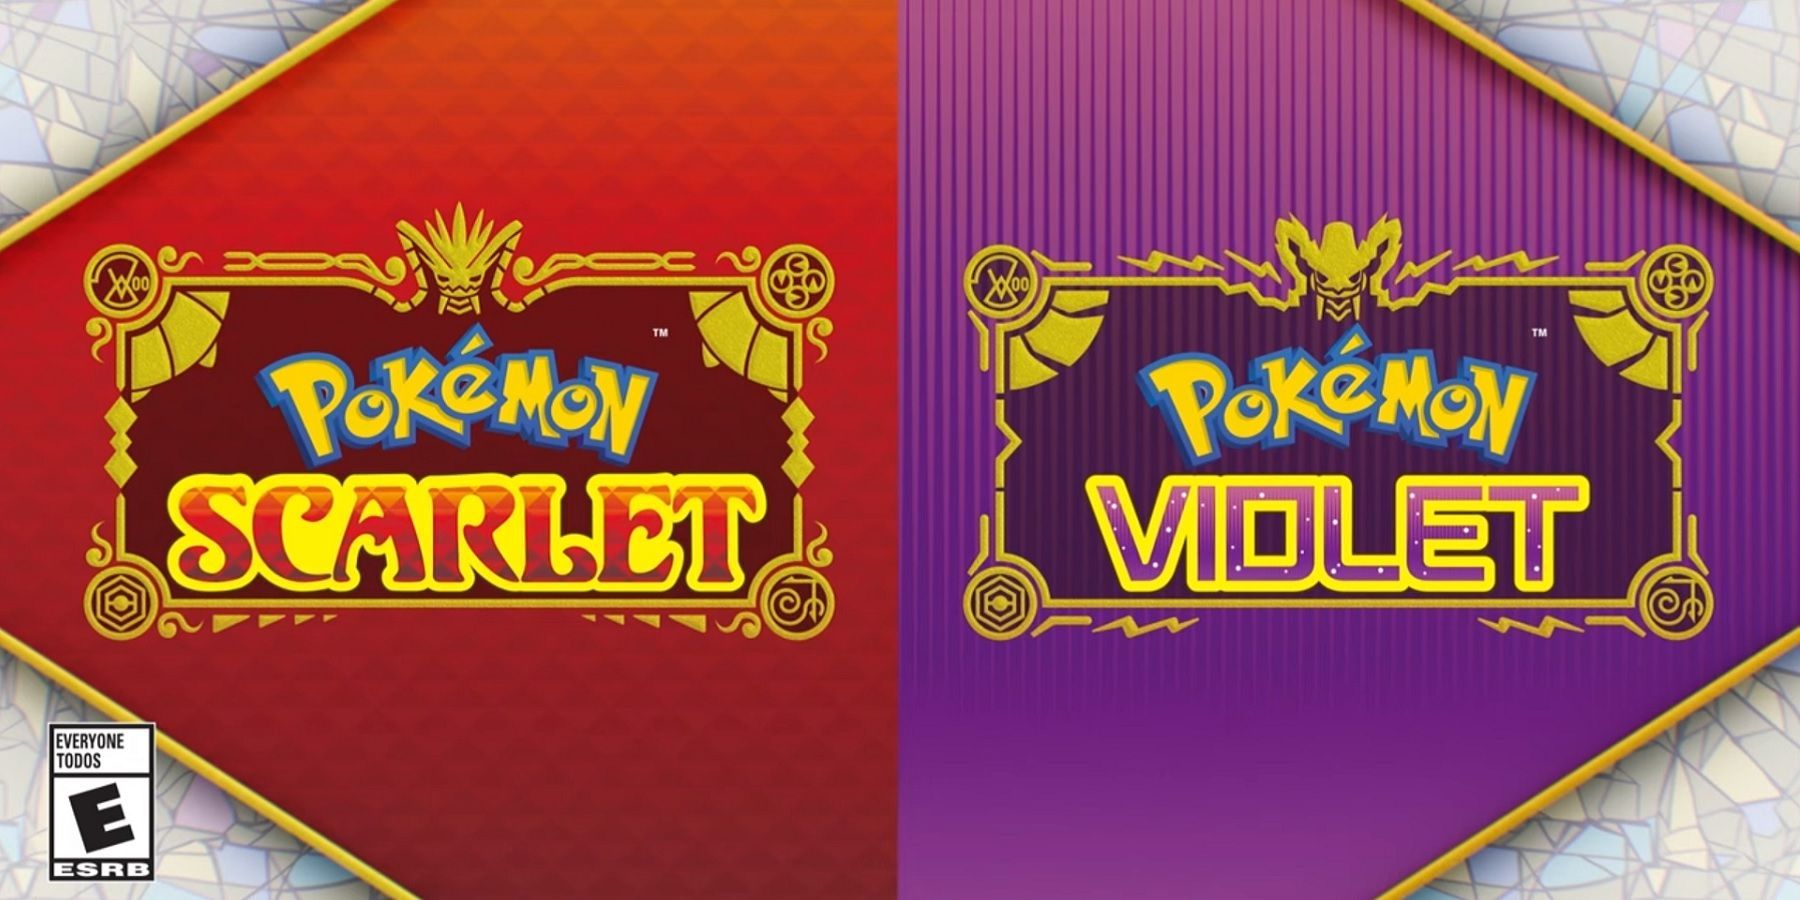 Pokémon Scarlet e Violet - Data de Lançamento, Trailer e Novos Pokémon